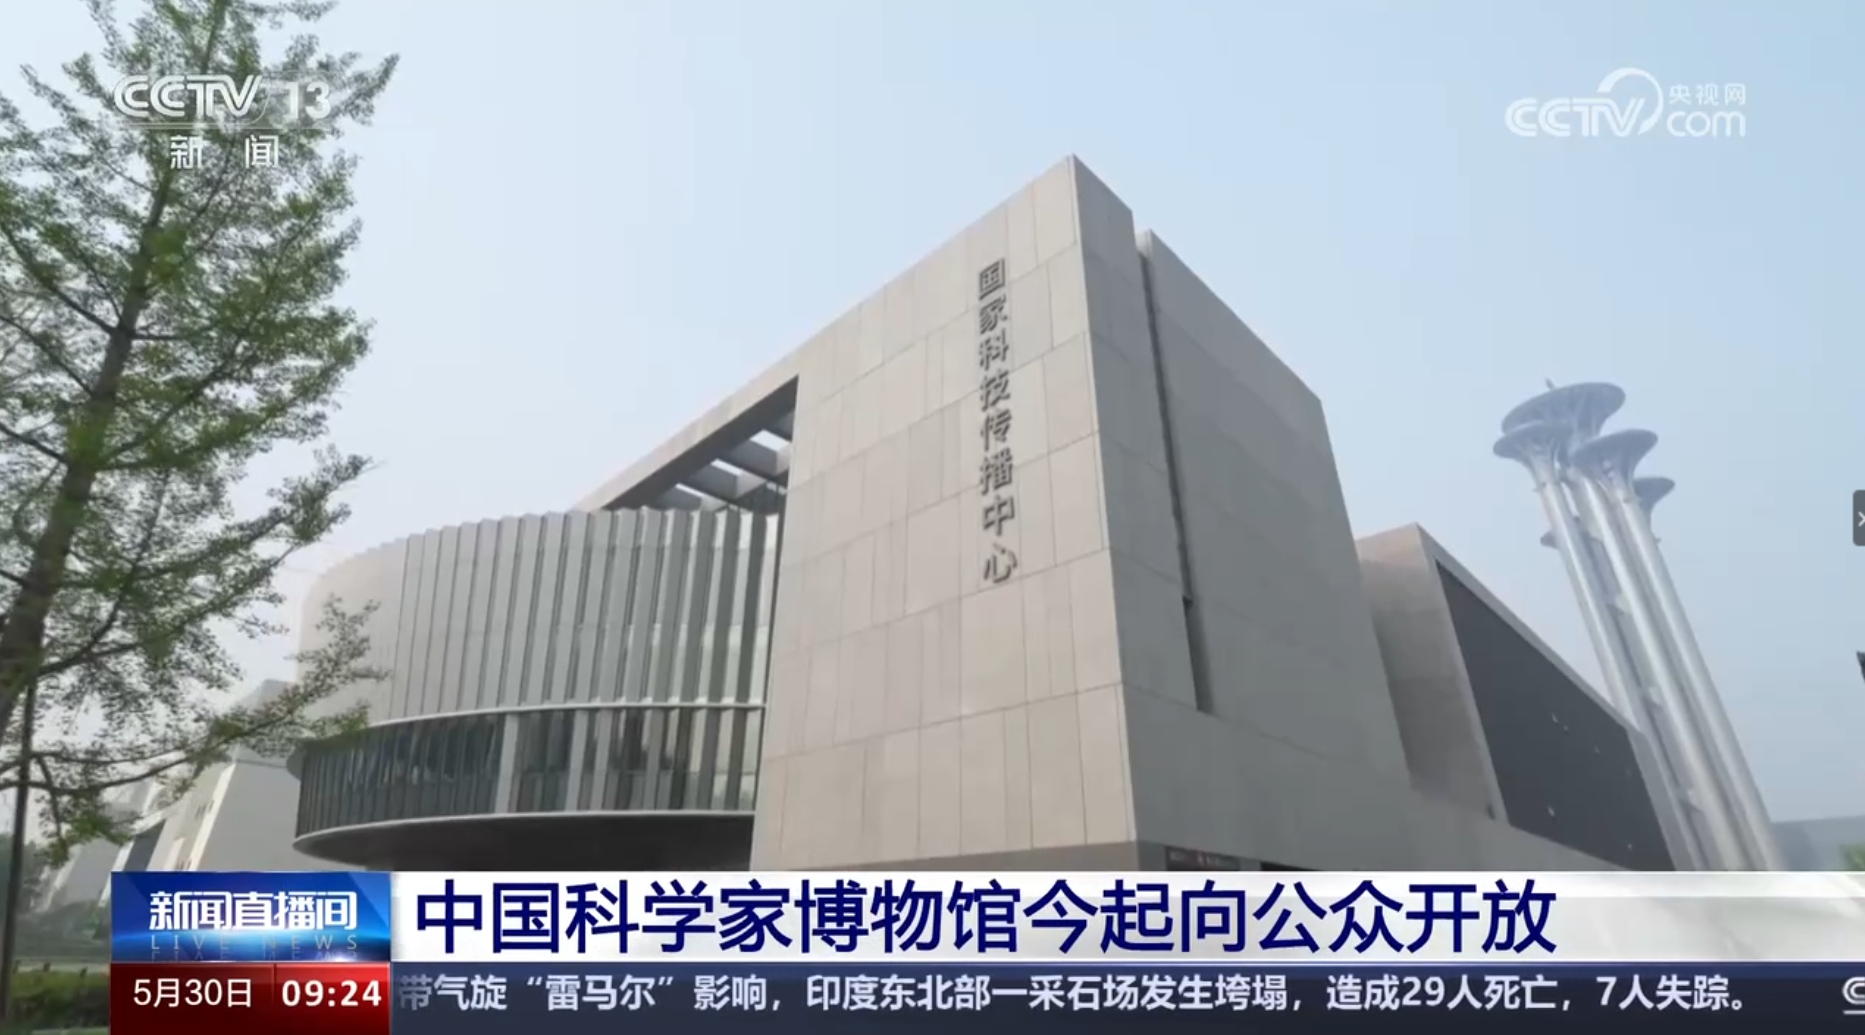 【央视网】中国科学家博物馆今起向公众开放